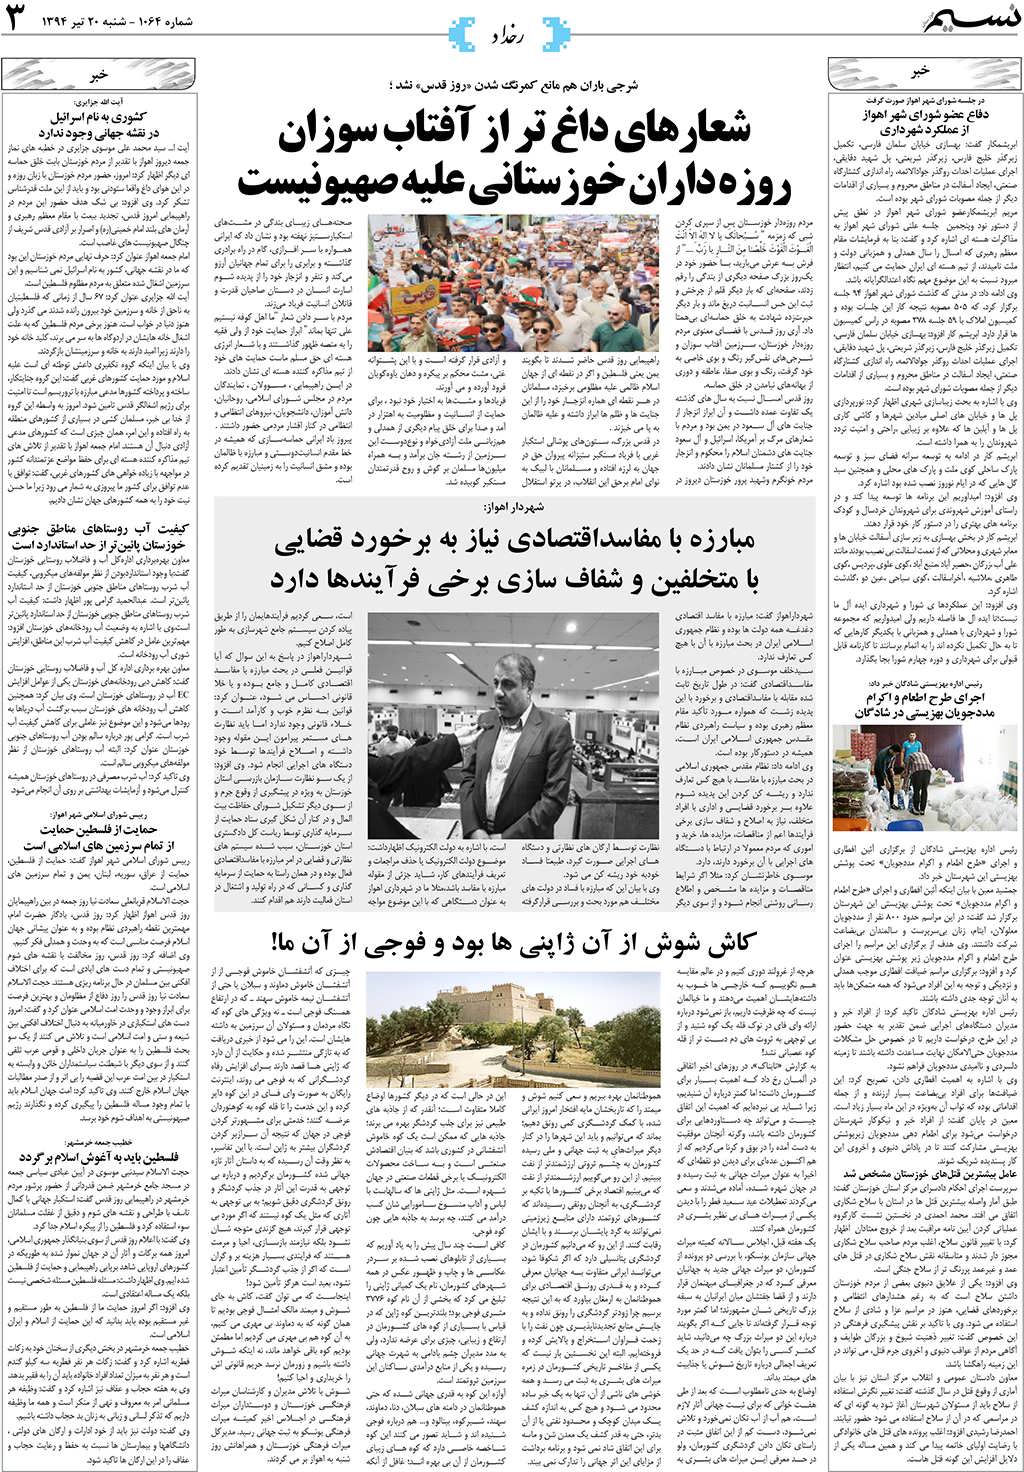 صفحه رخداد روزنامه نسیم شماره 1064